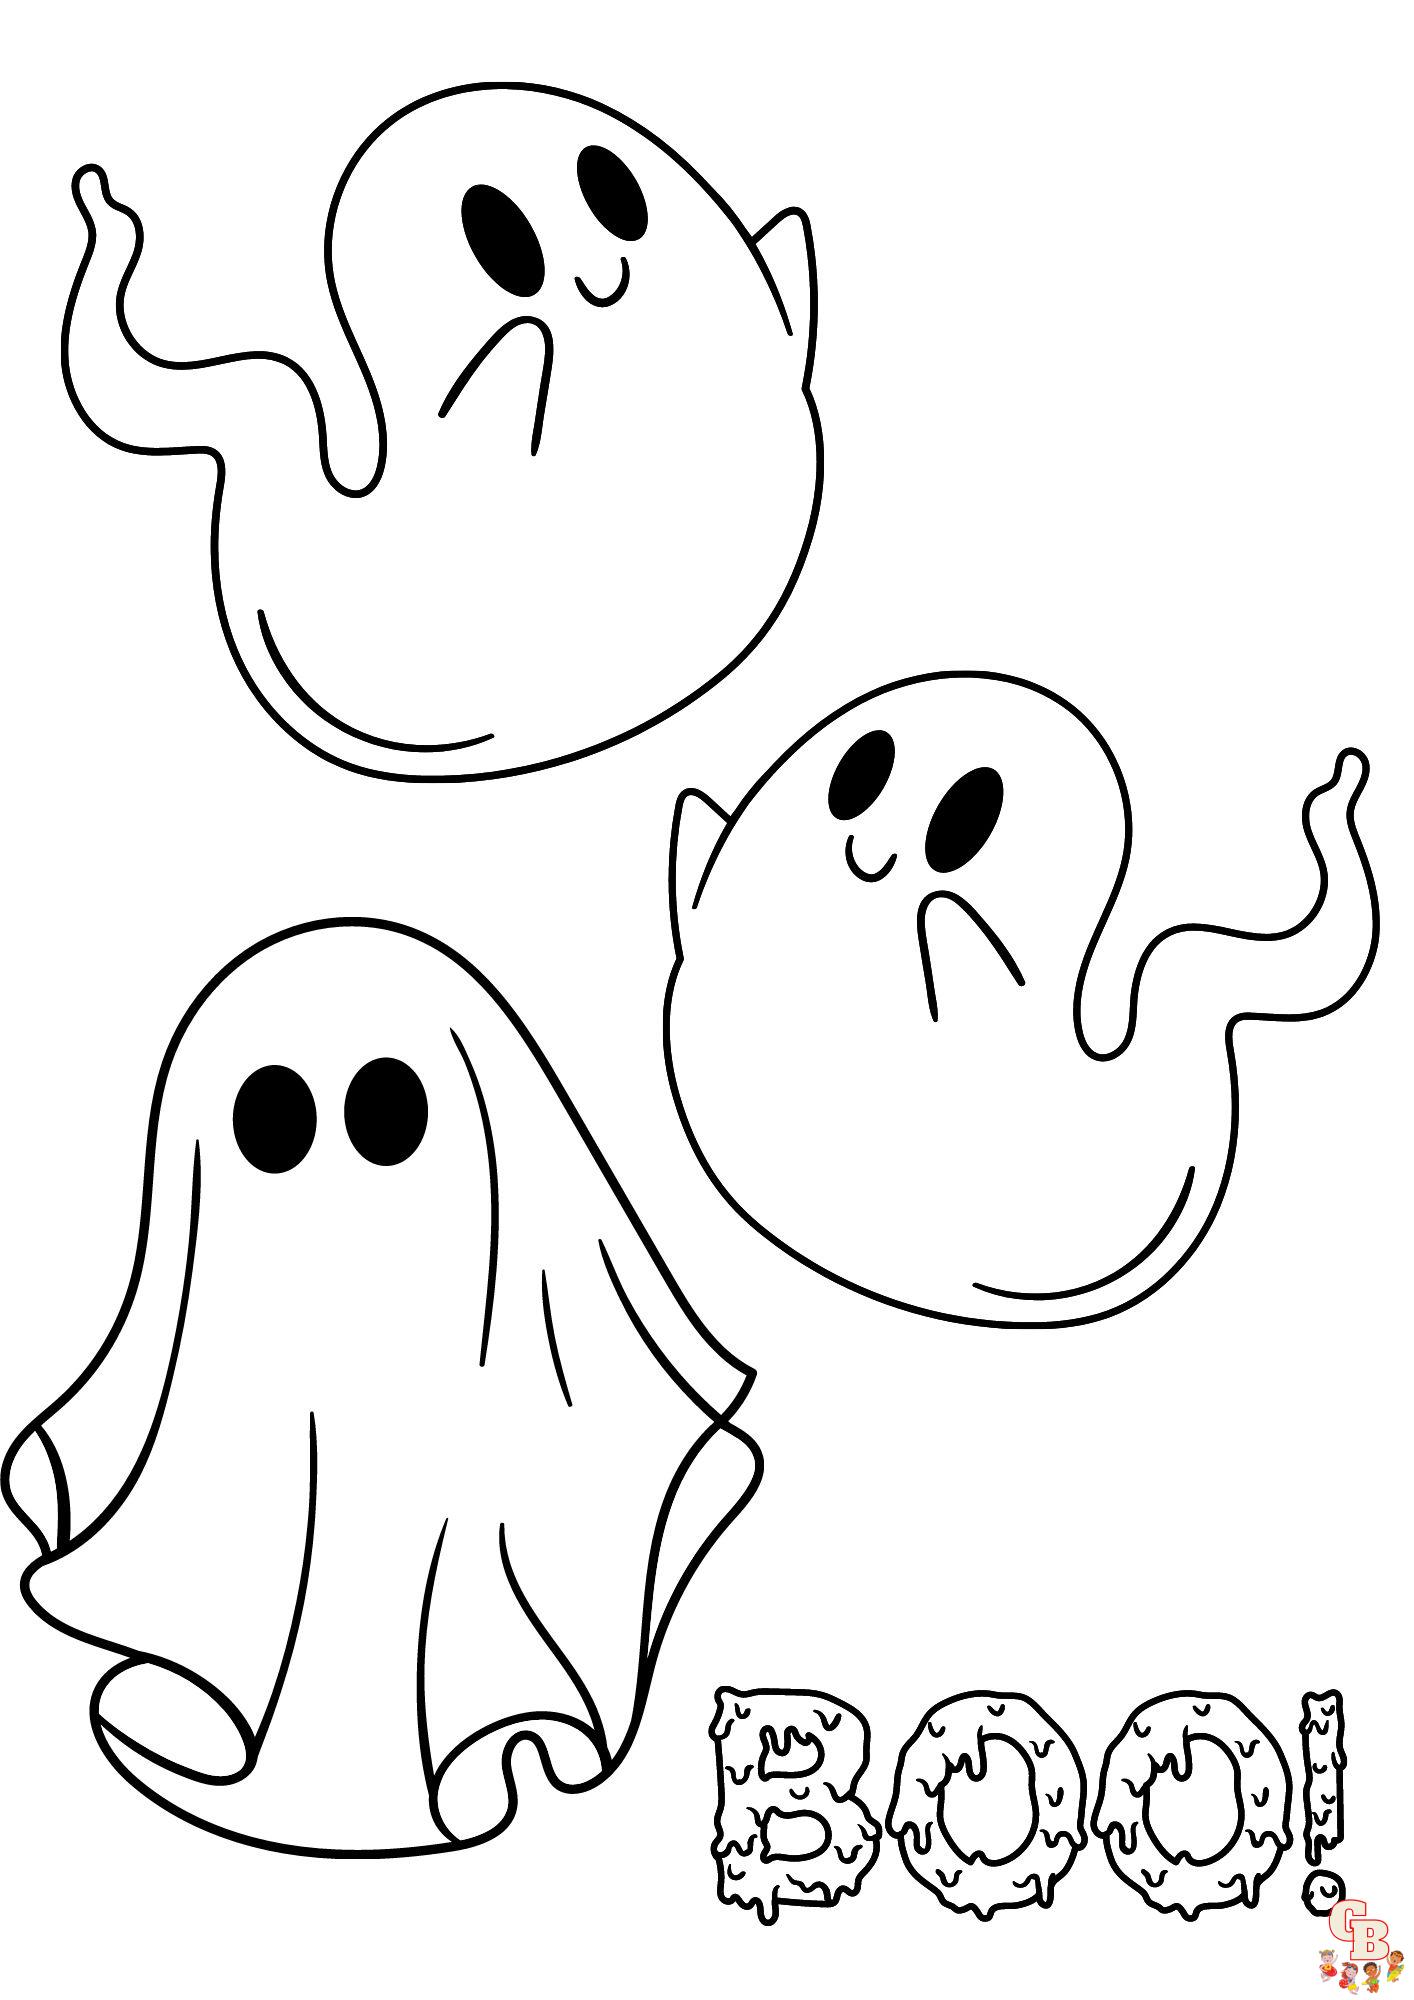 Página para colorear de fantasmas de Halloween